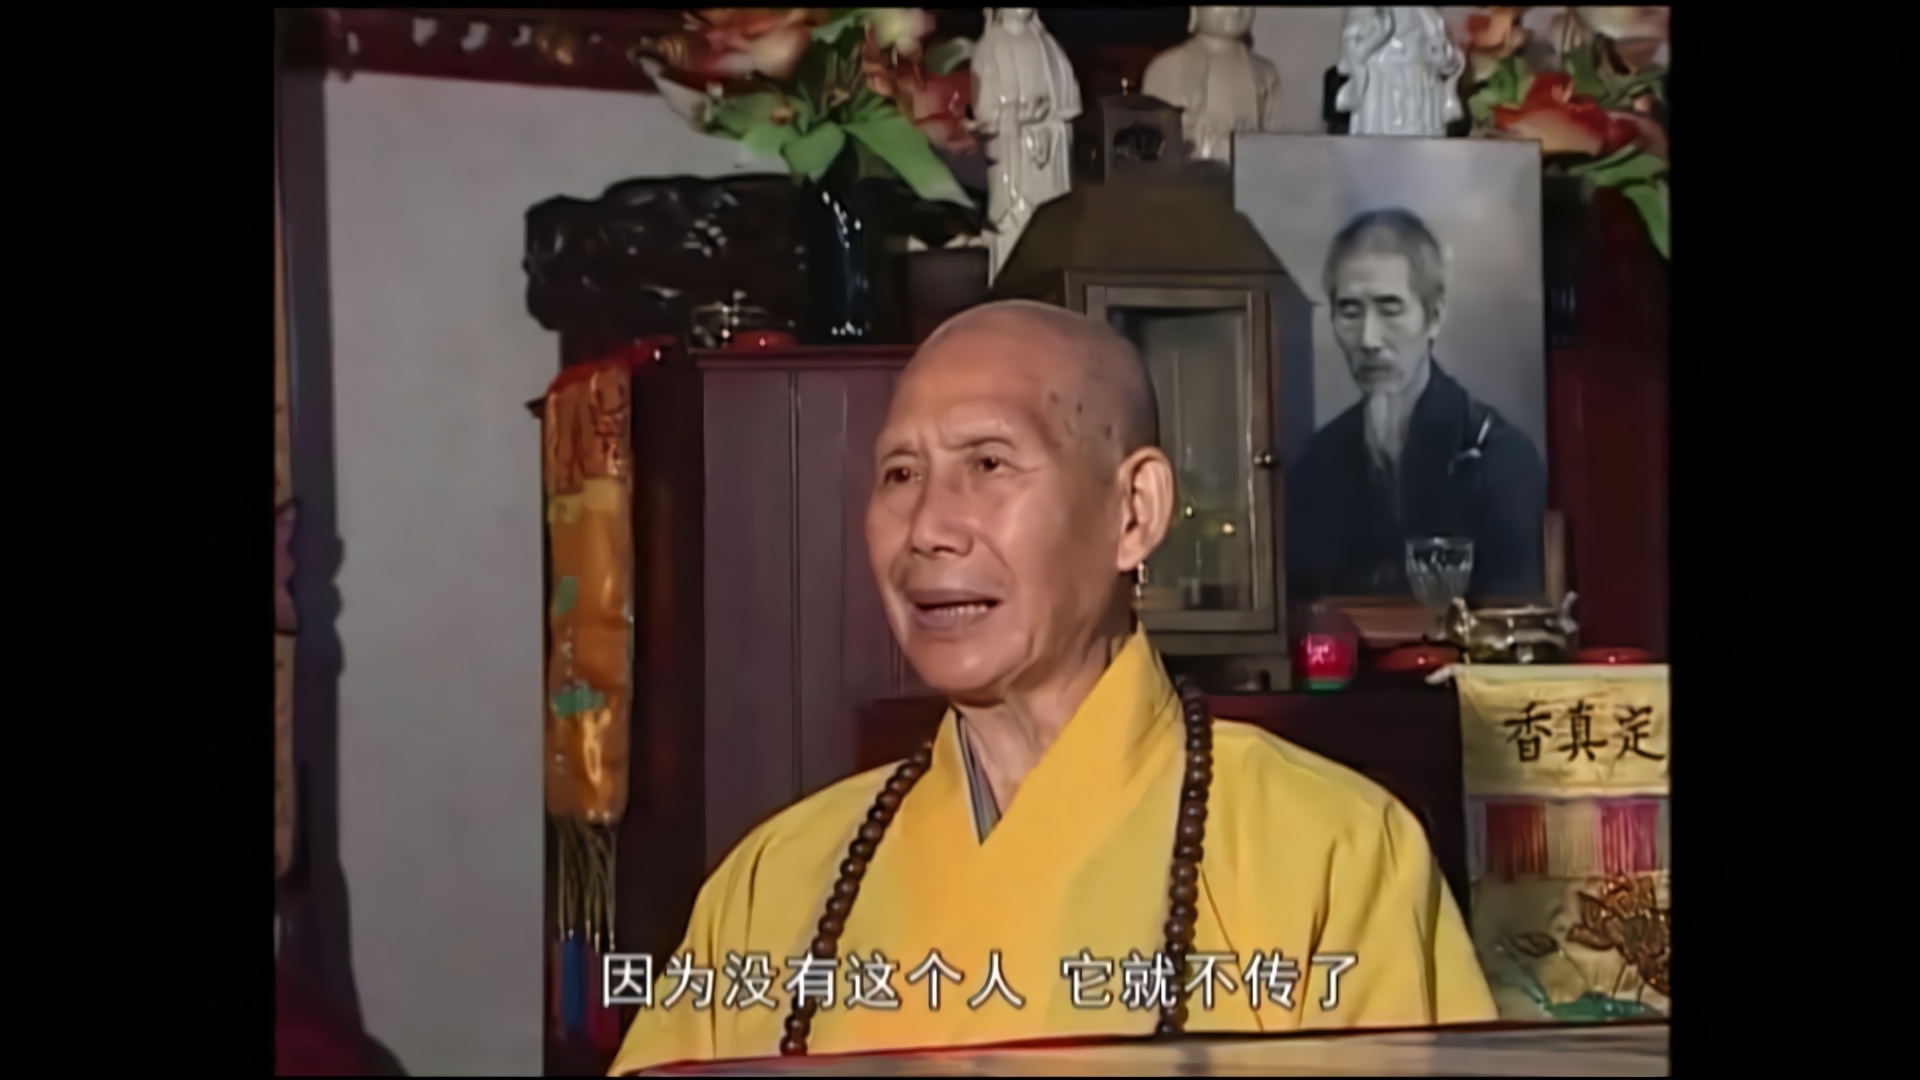 佛源妙心禅师(1923-2009),近代禅宗泰斗虚云老和尚嗣法传人之一,云门